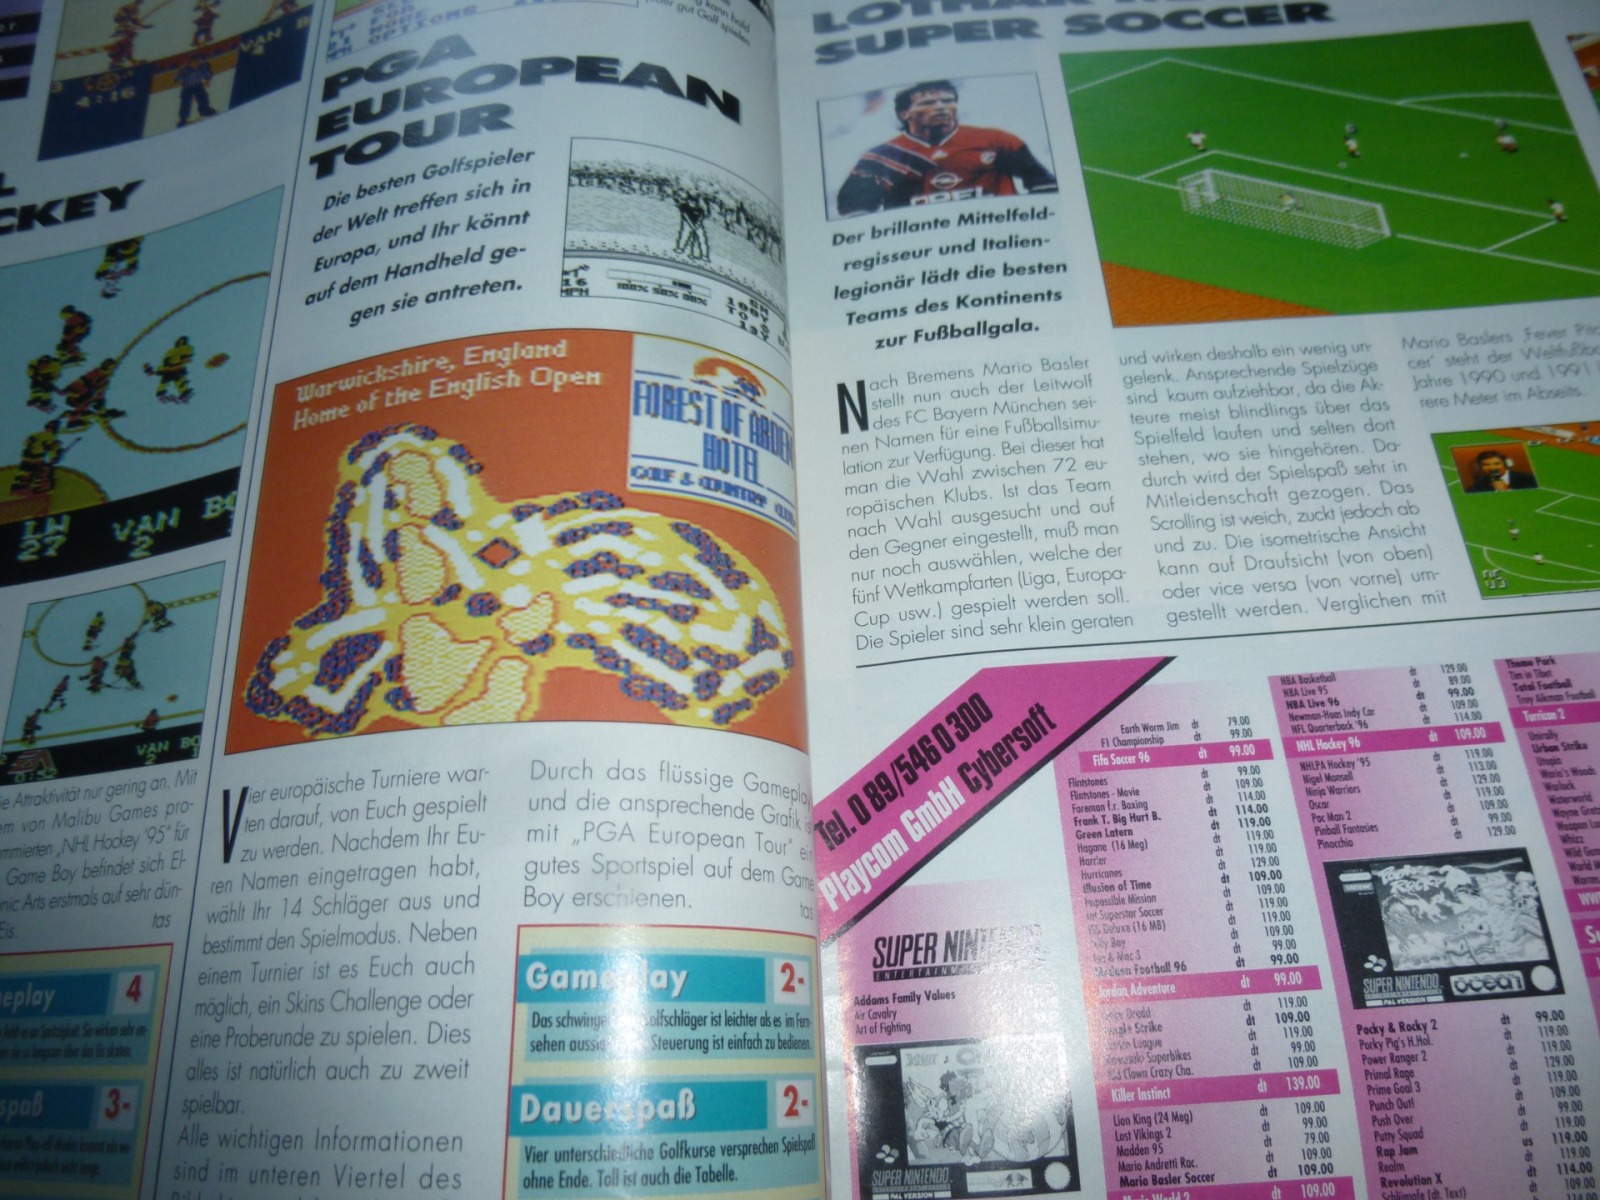 TOTAL Das unabhängige Magazin - 100% Nintendo - Ausgabe 10/95 1995 13